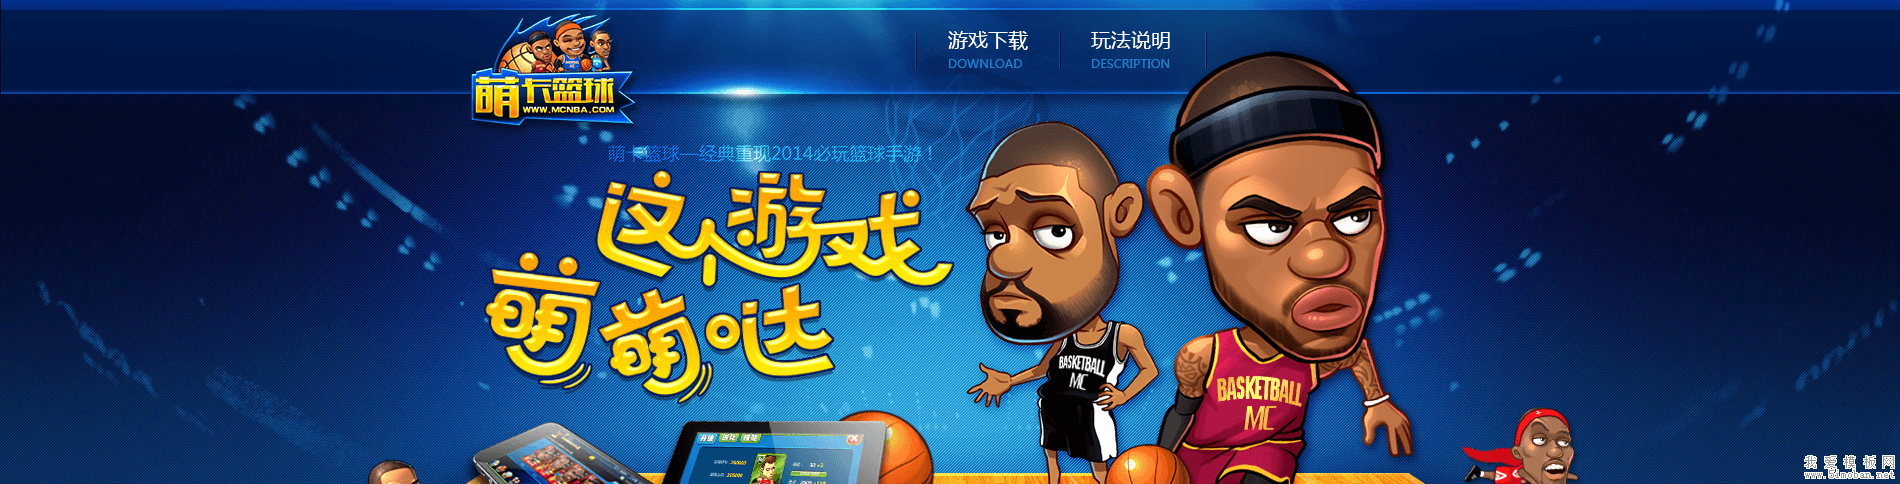 篮球游戏网站下载页设计欣赏